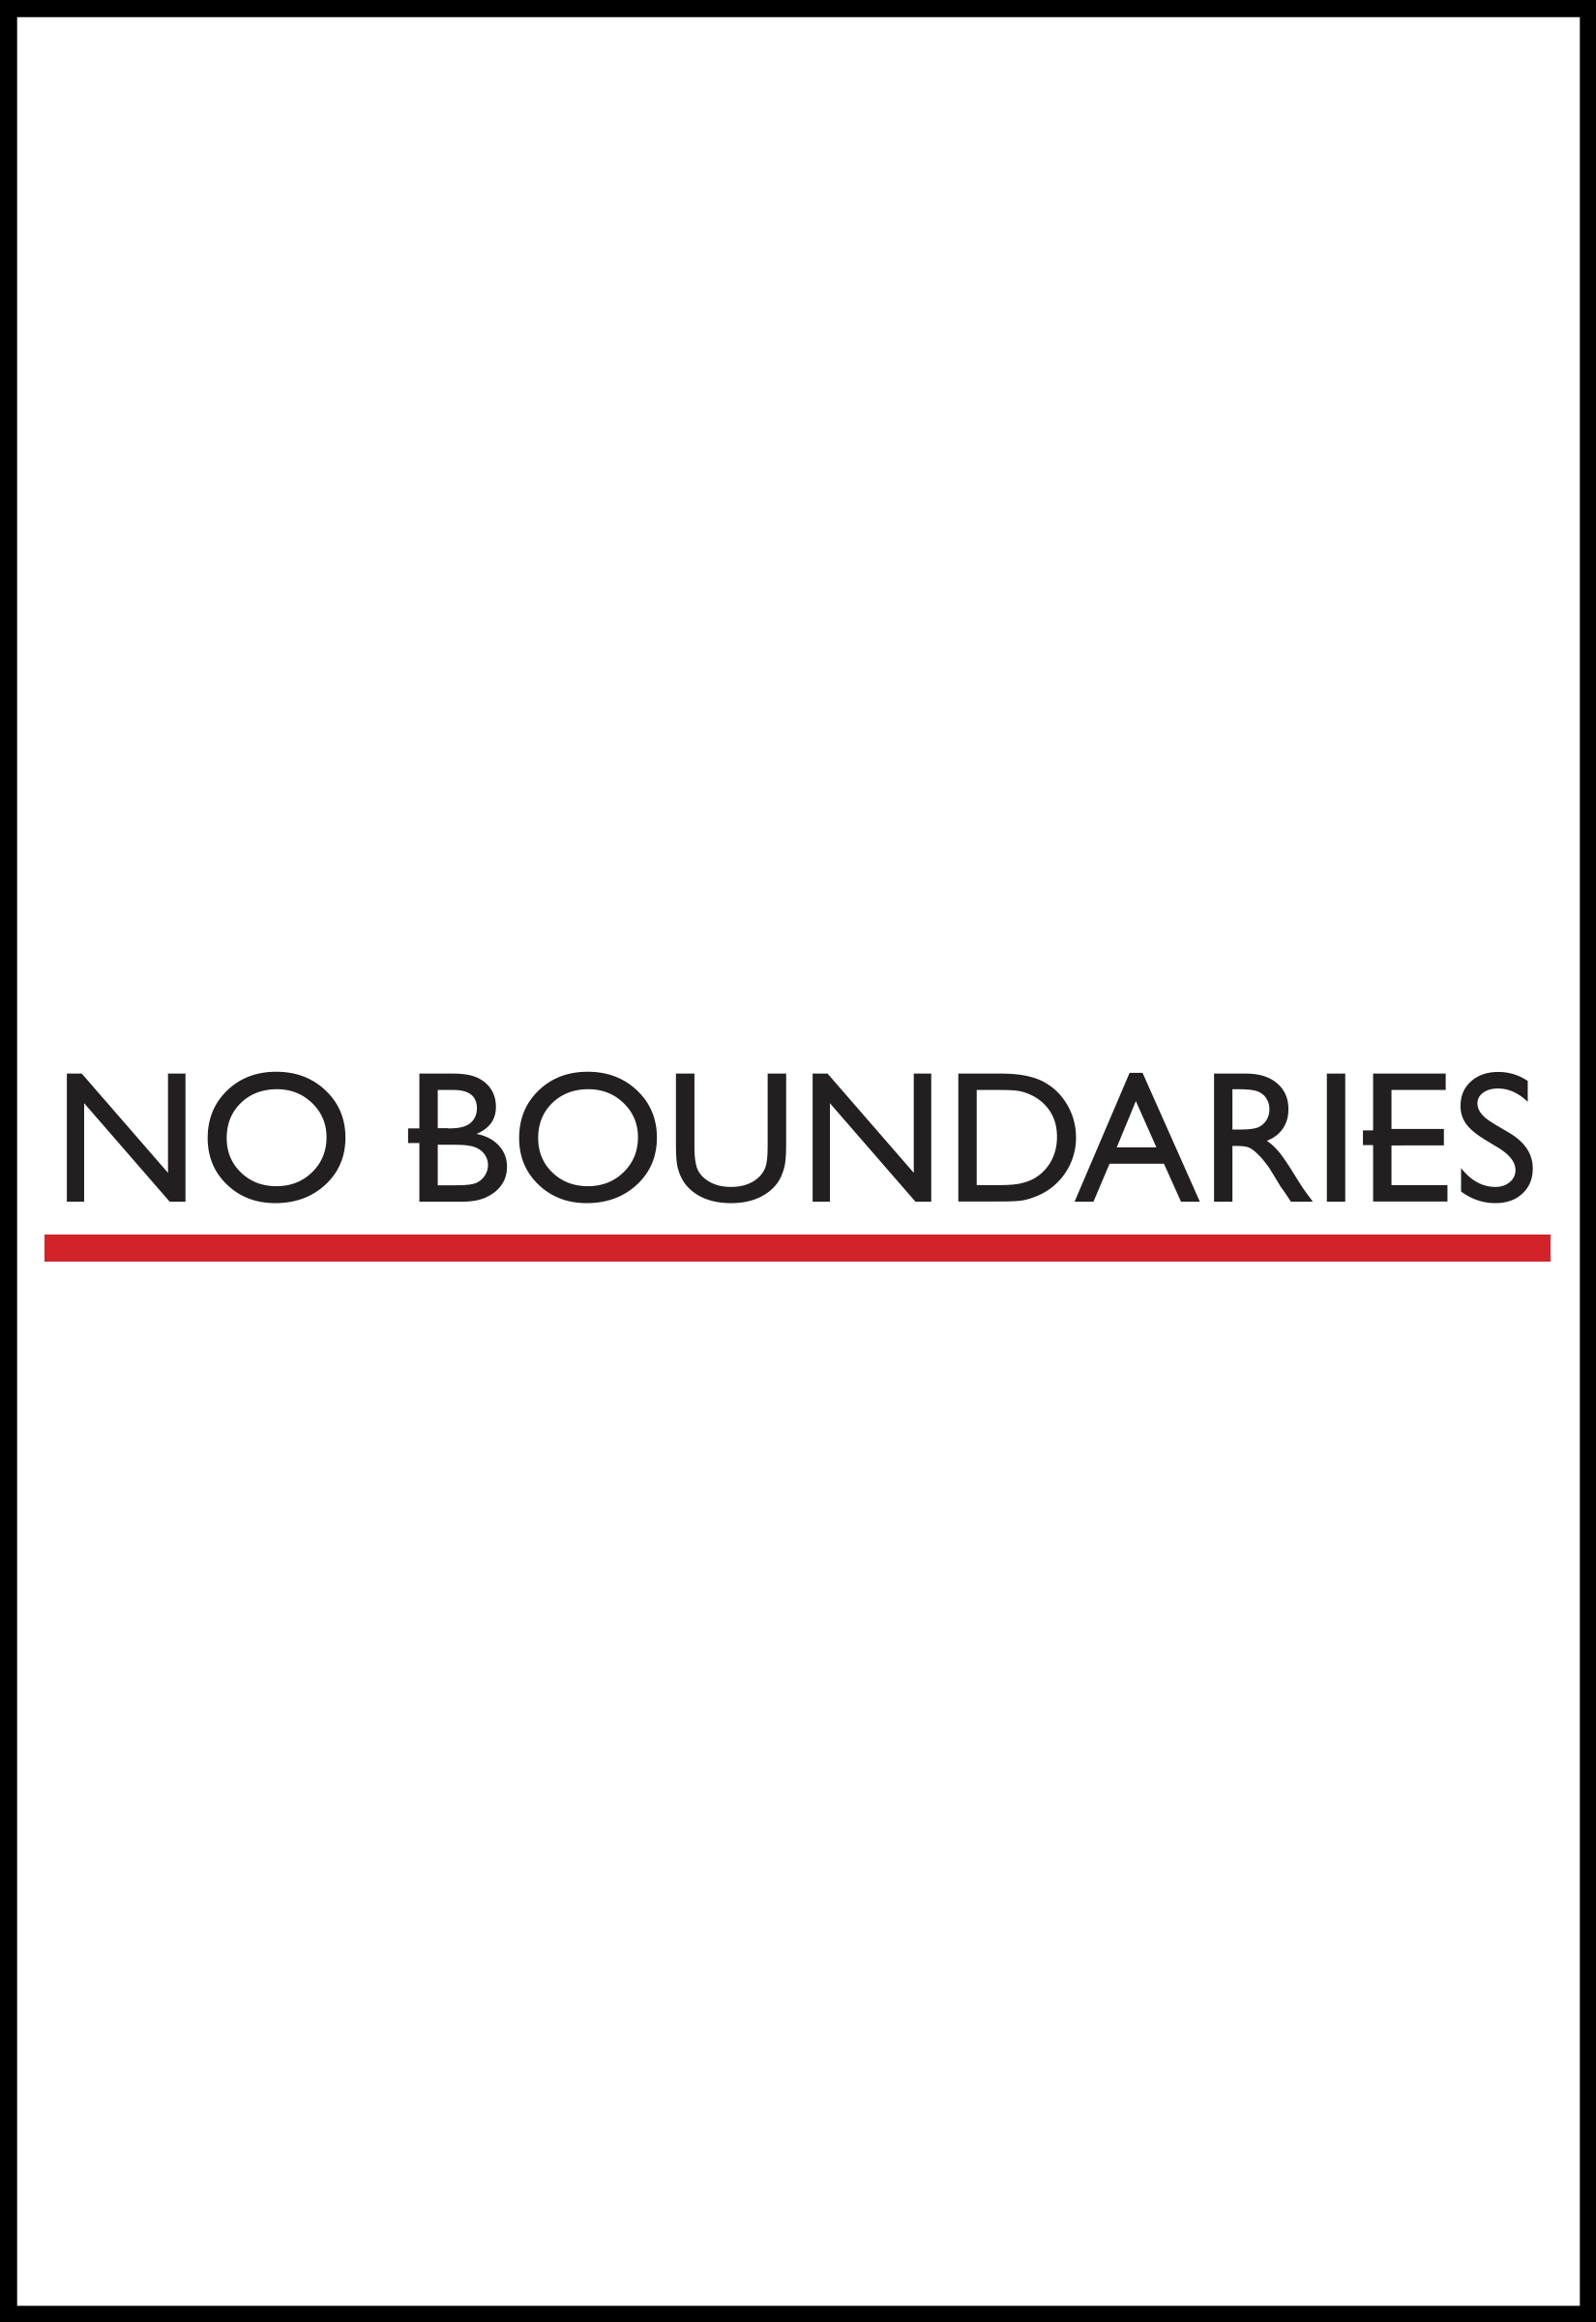 no boundary